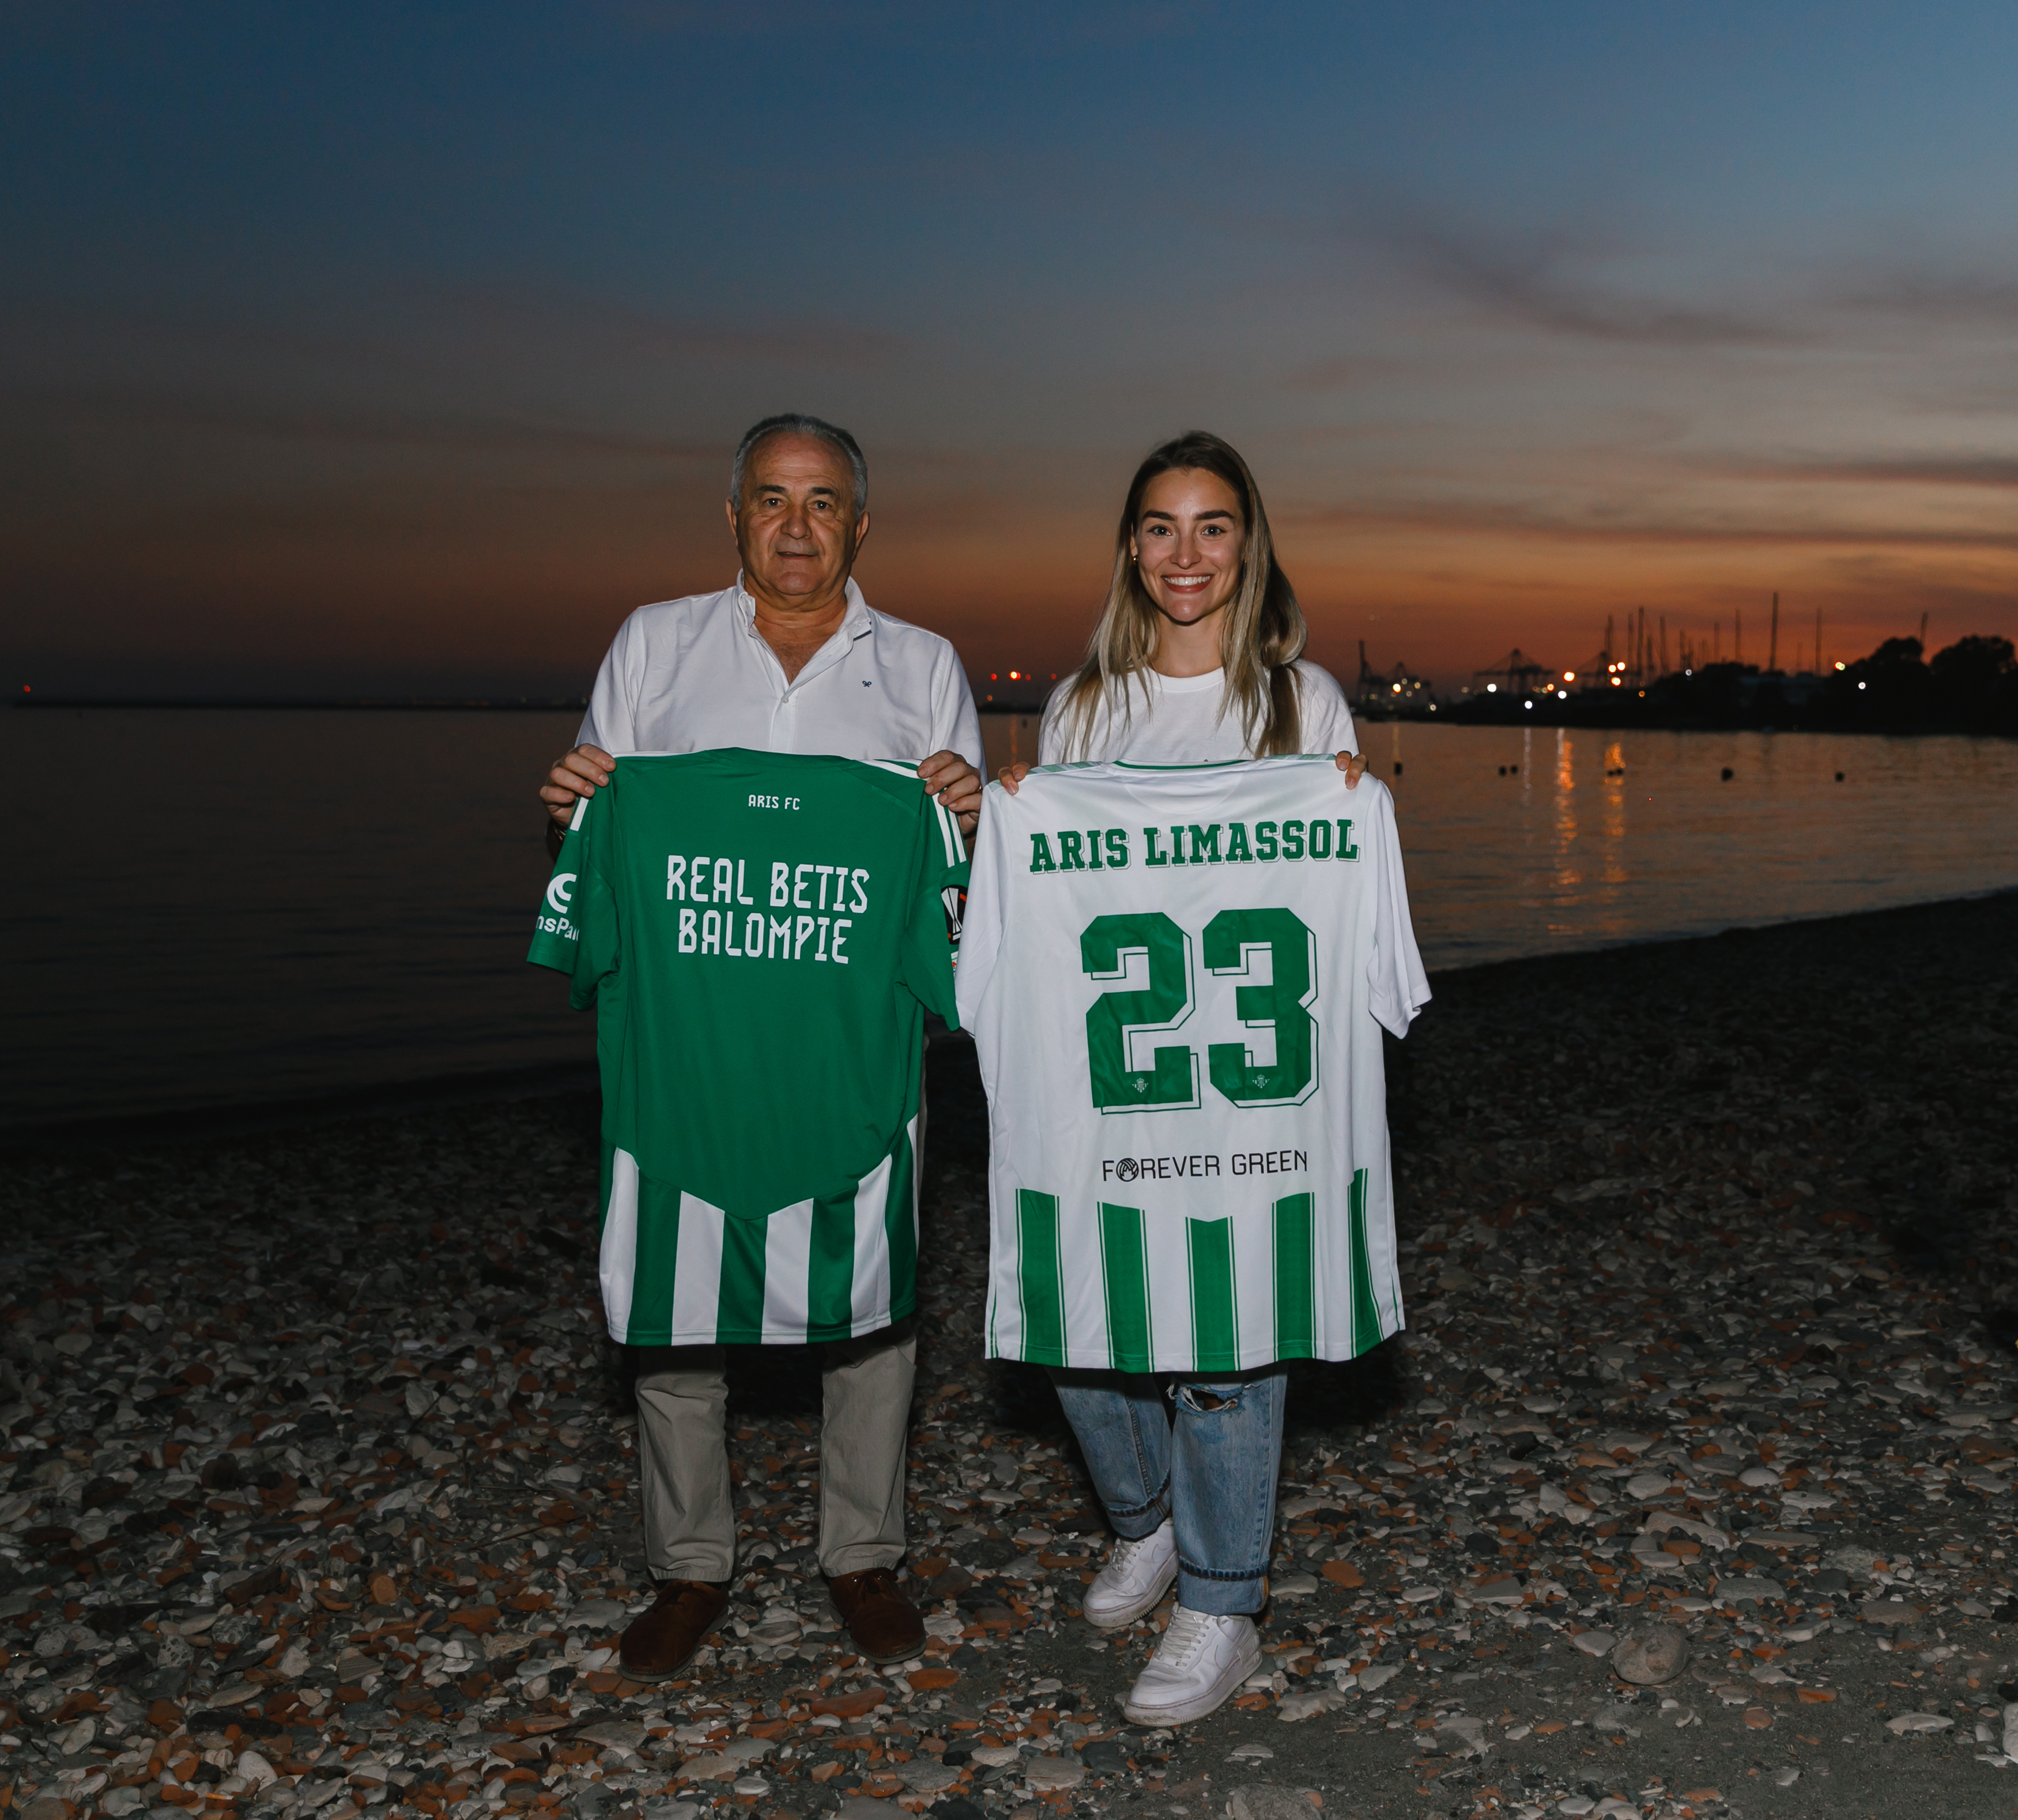 El Real Betis y el Aris Limassol, unidos por Forever Green para la sostenibilidad de nuestro planeta.